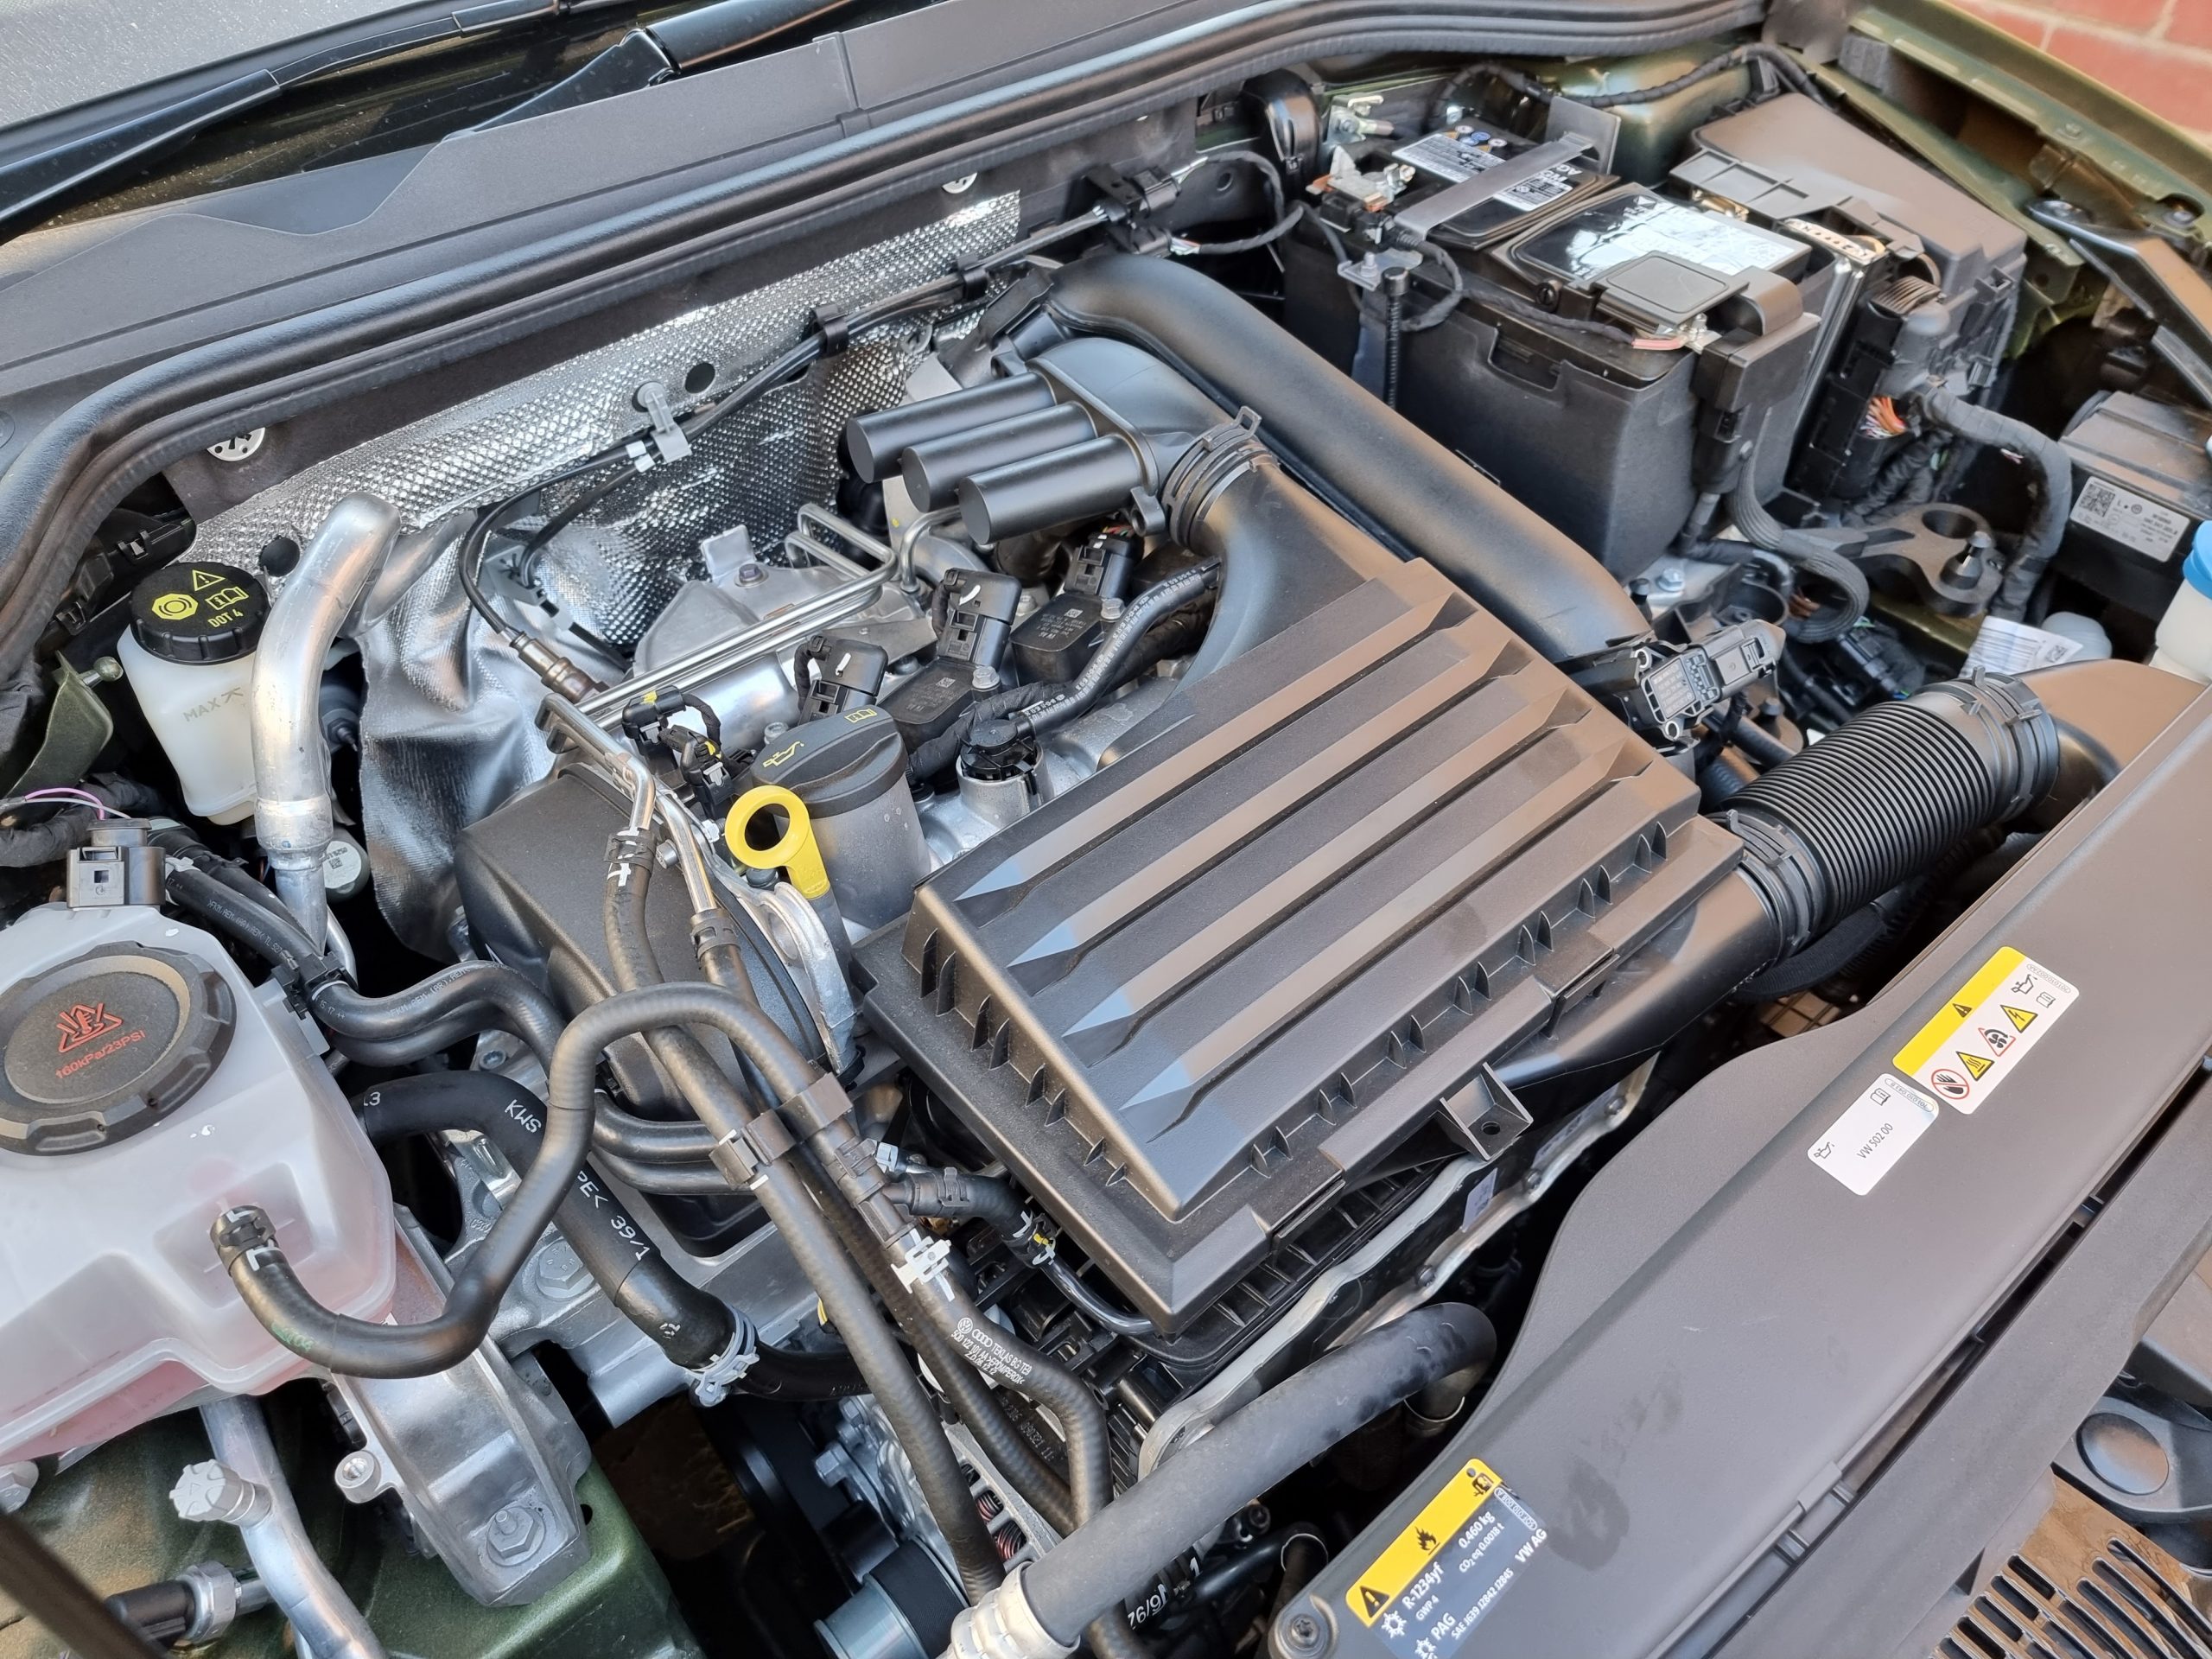 2022 VW Golf Wagon engine